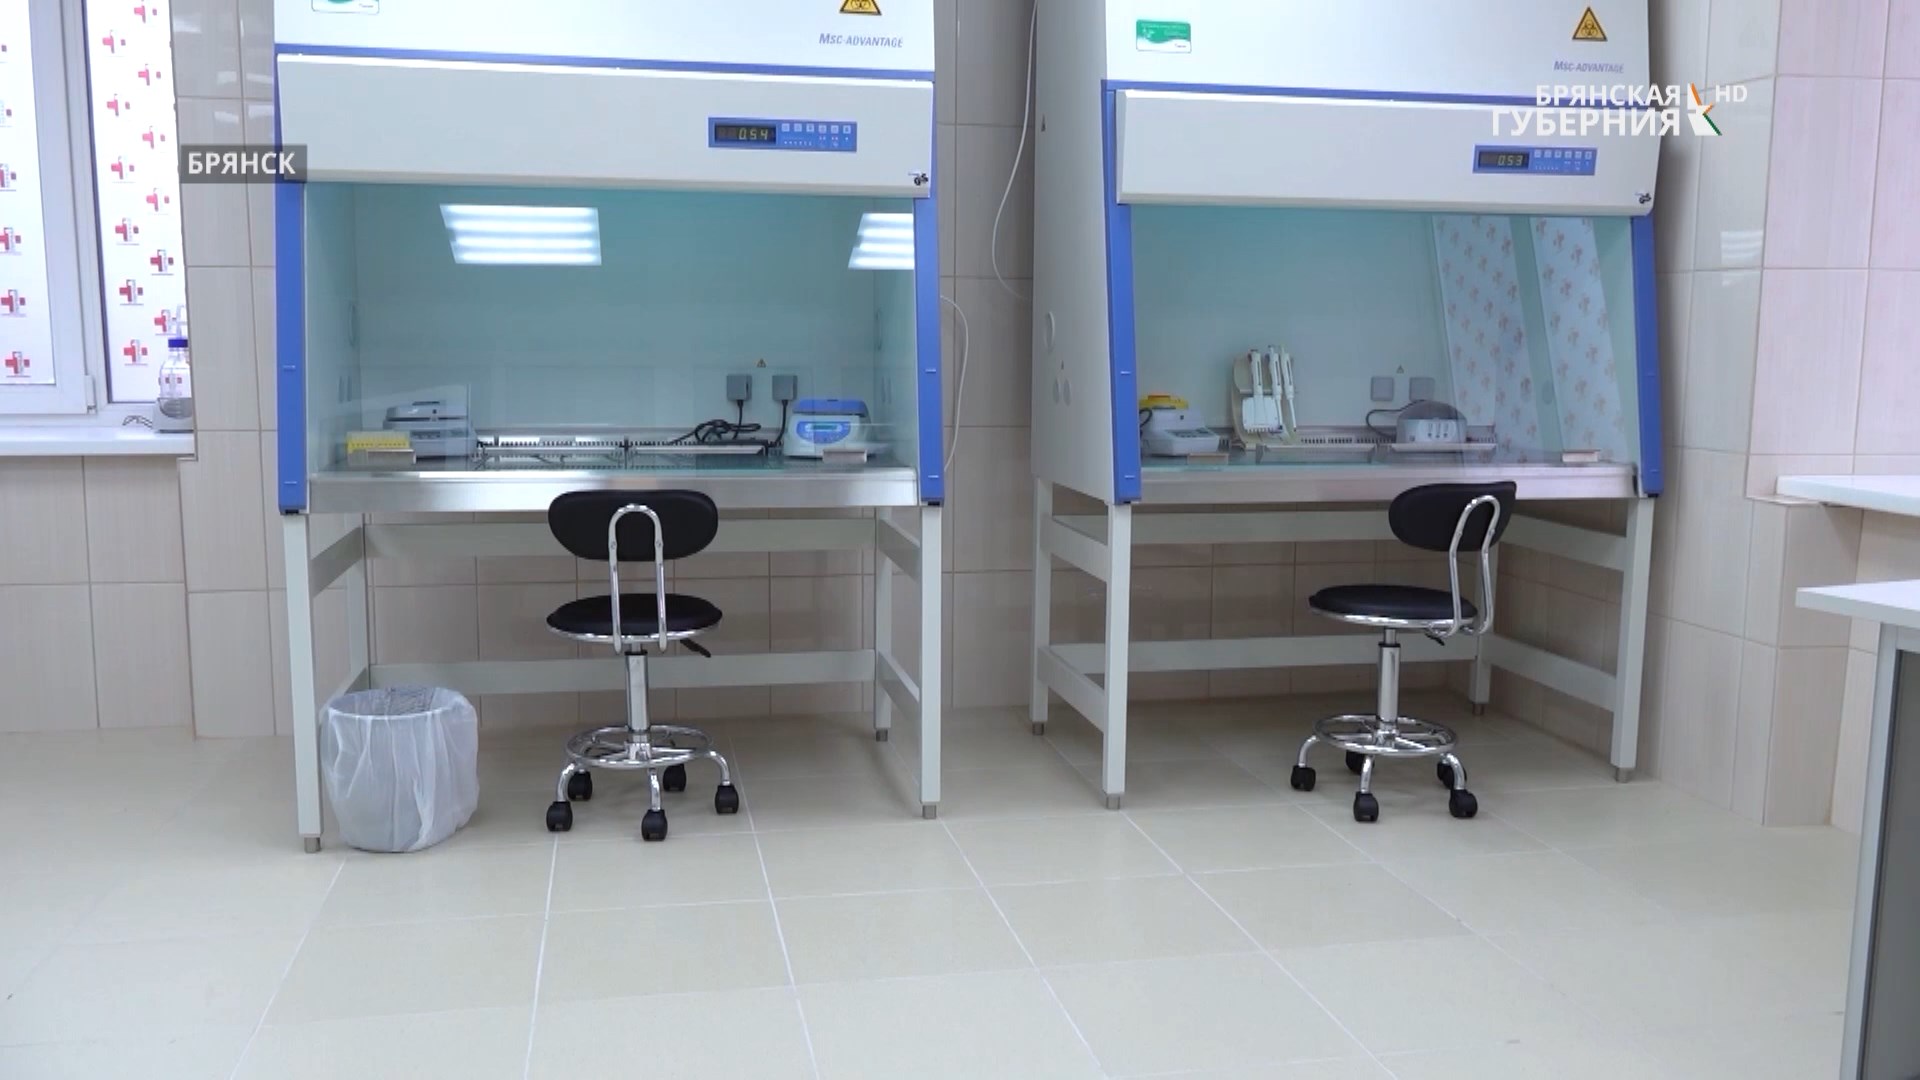 Новая ПЦР-лаборатория в Брянске продолжит свою работу и по завершении пандемии ковида